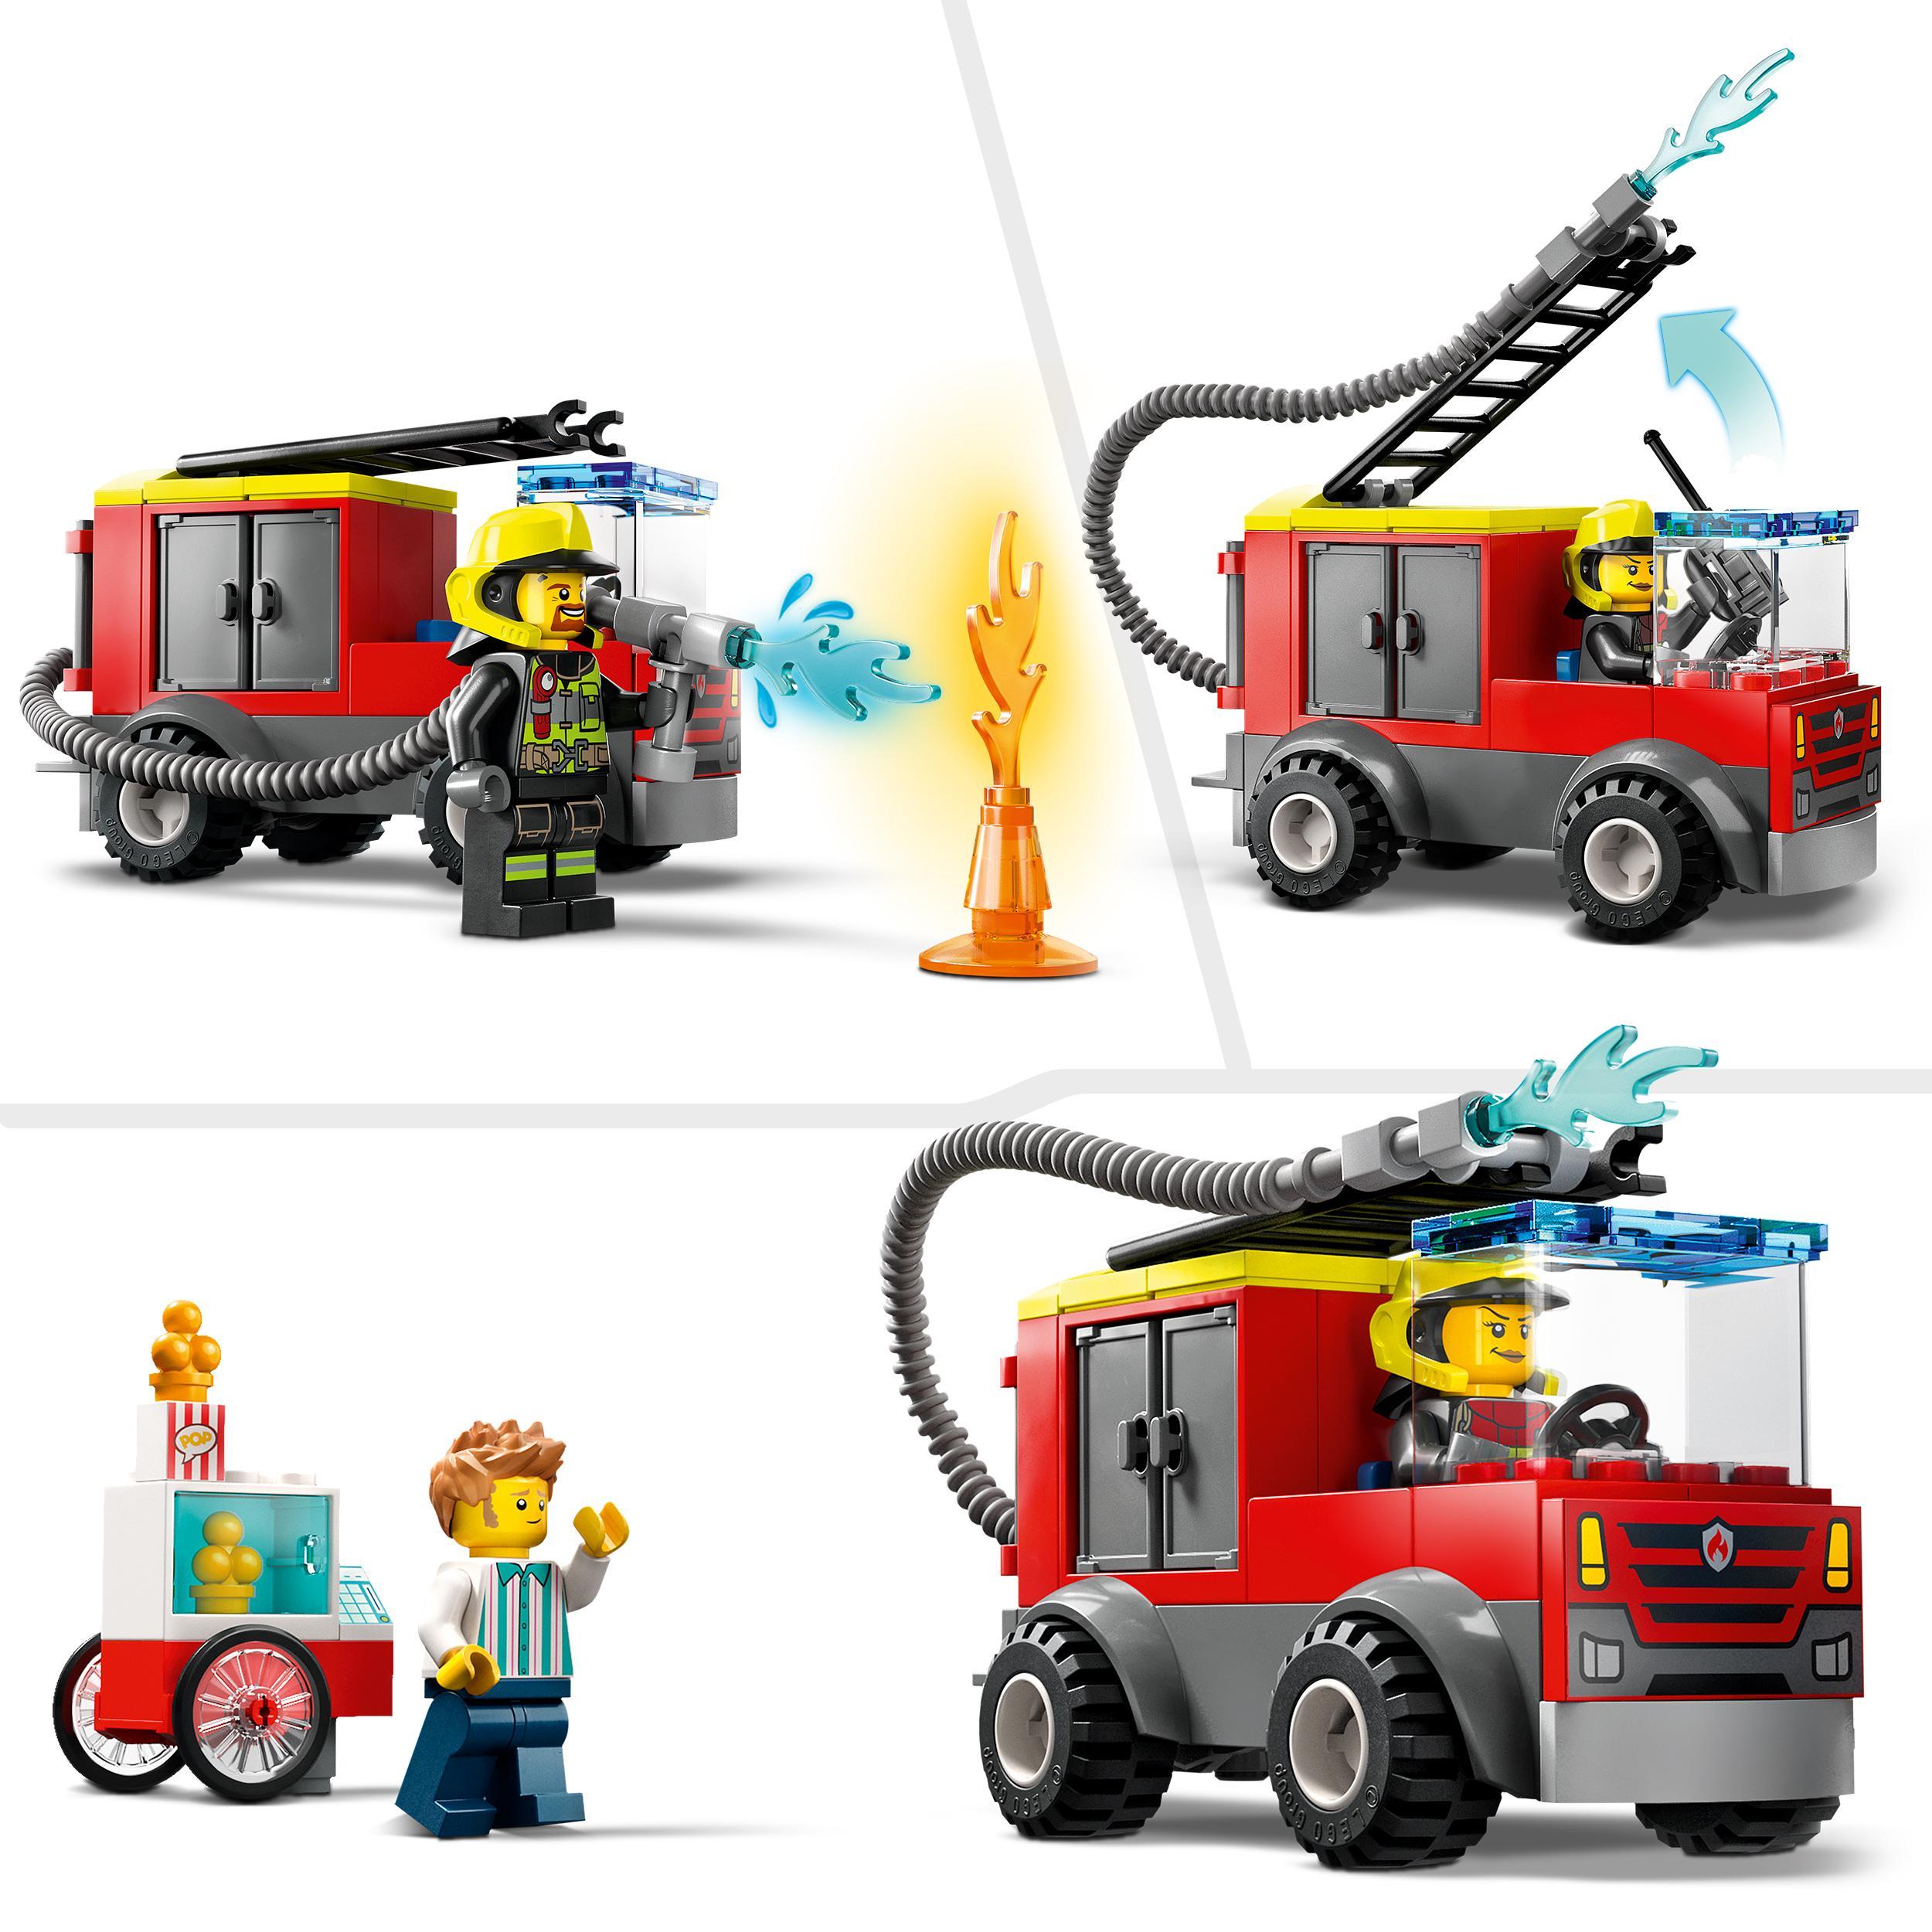 Lego city fire 60375 caserma dei pompieri e autopompa, camion giocattolo dei vigili del fuoco, giochi per bambini, idee regalo - LEGO CITY